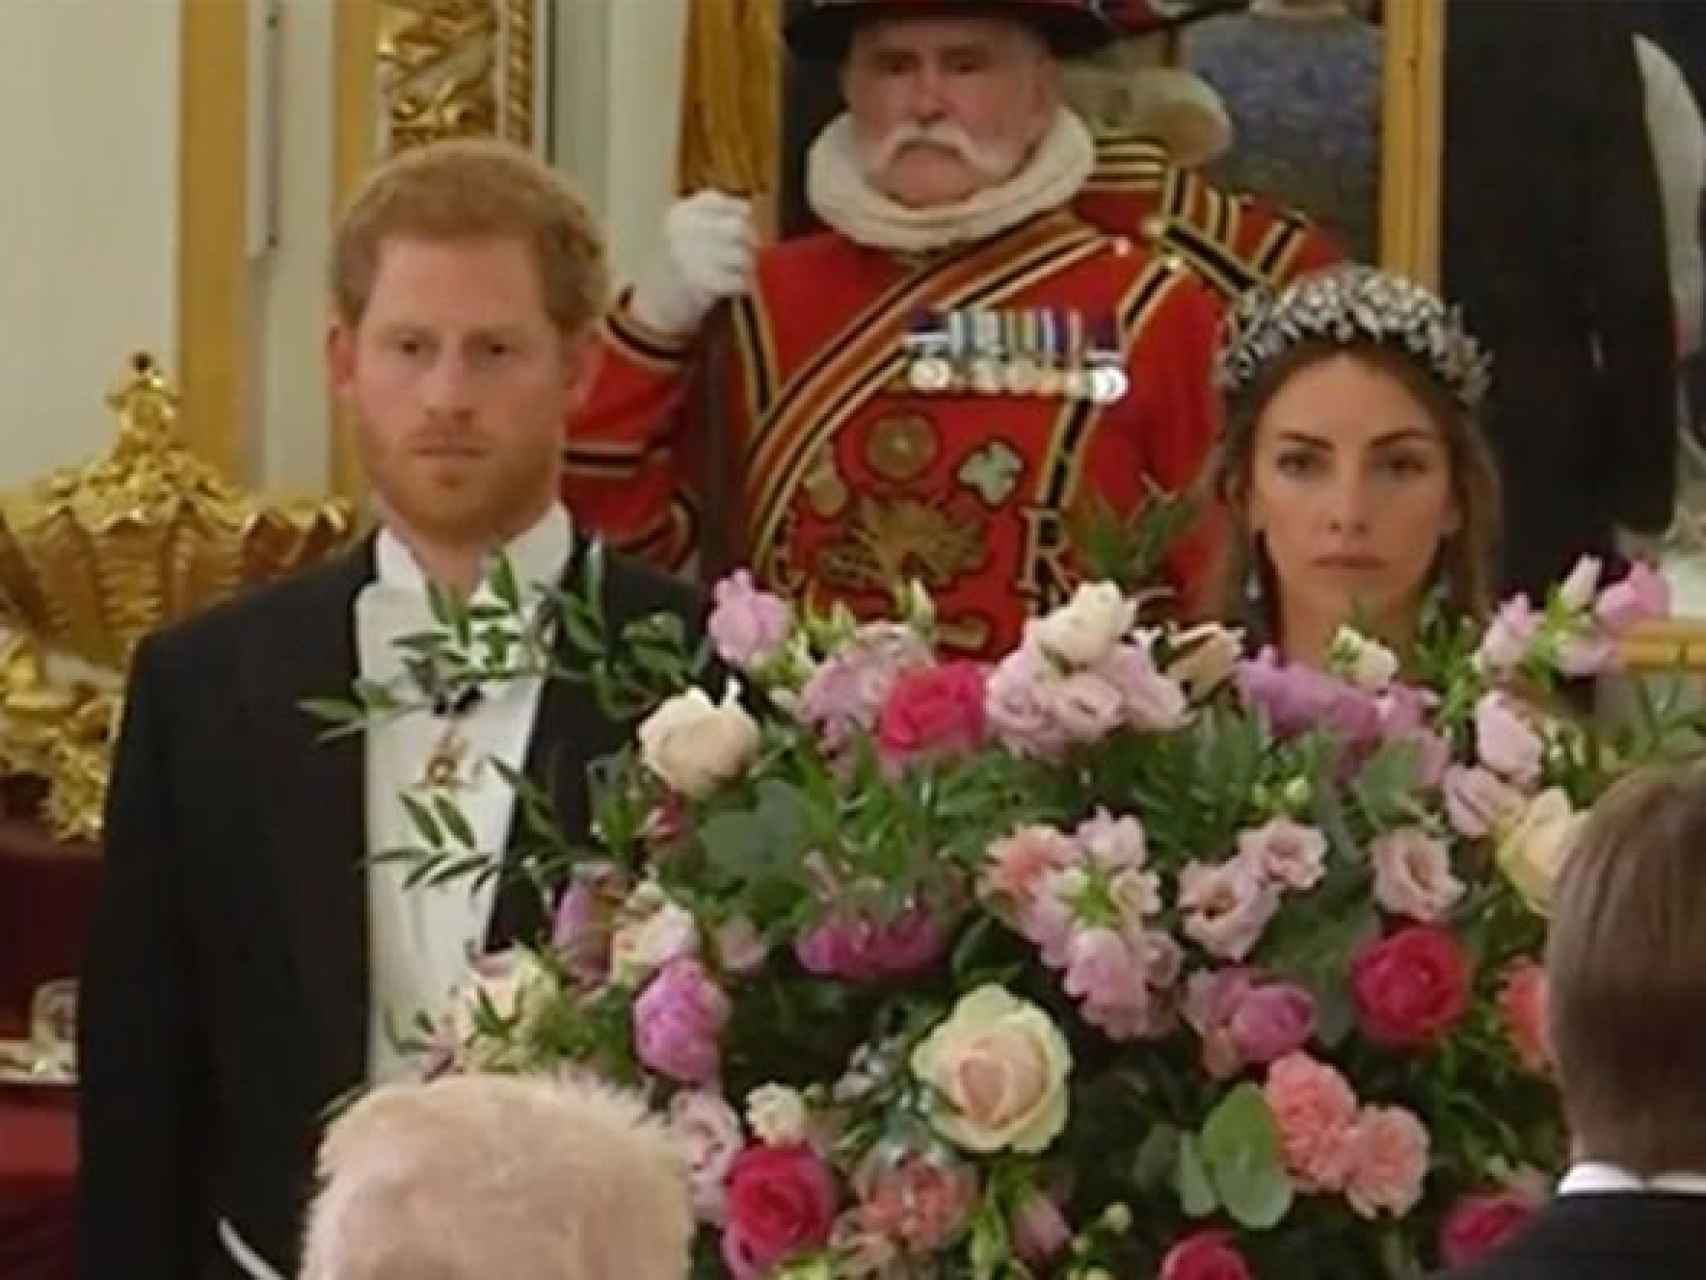 Rose Hanbury, sentada junto al príncipe Harry en la cena de estado celebrada en Buckingham en honor a Felipe VI y Letizia.